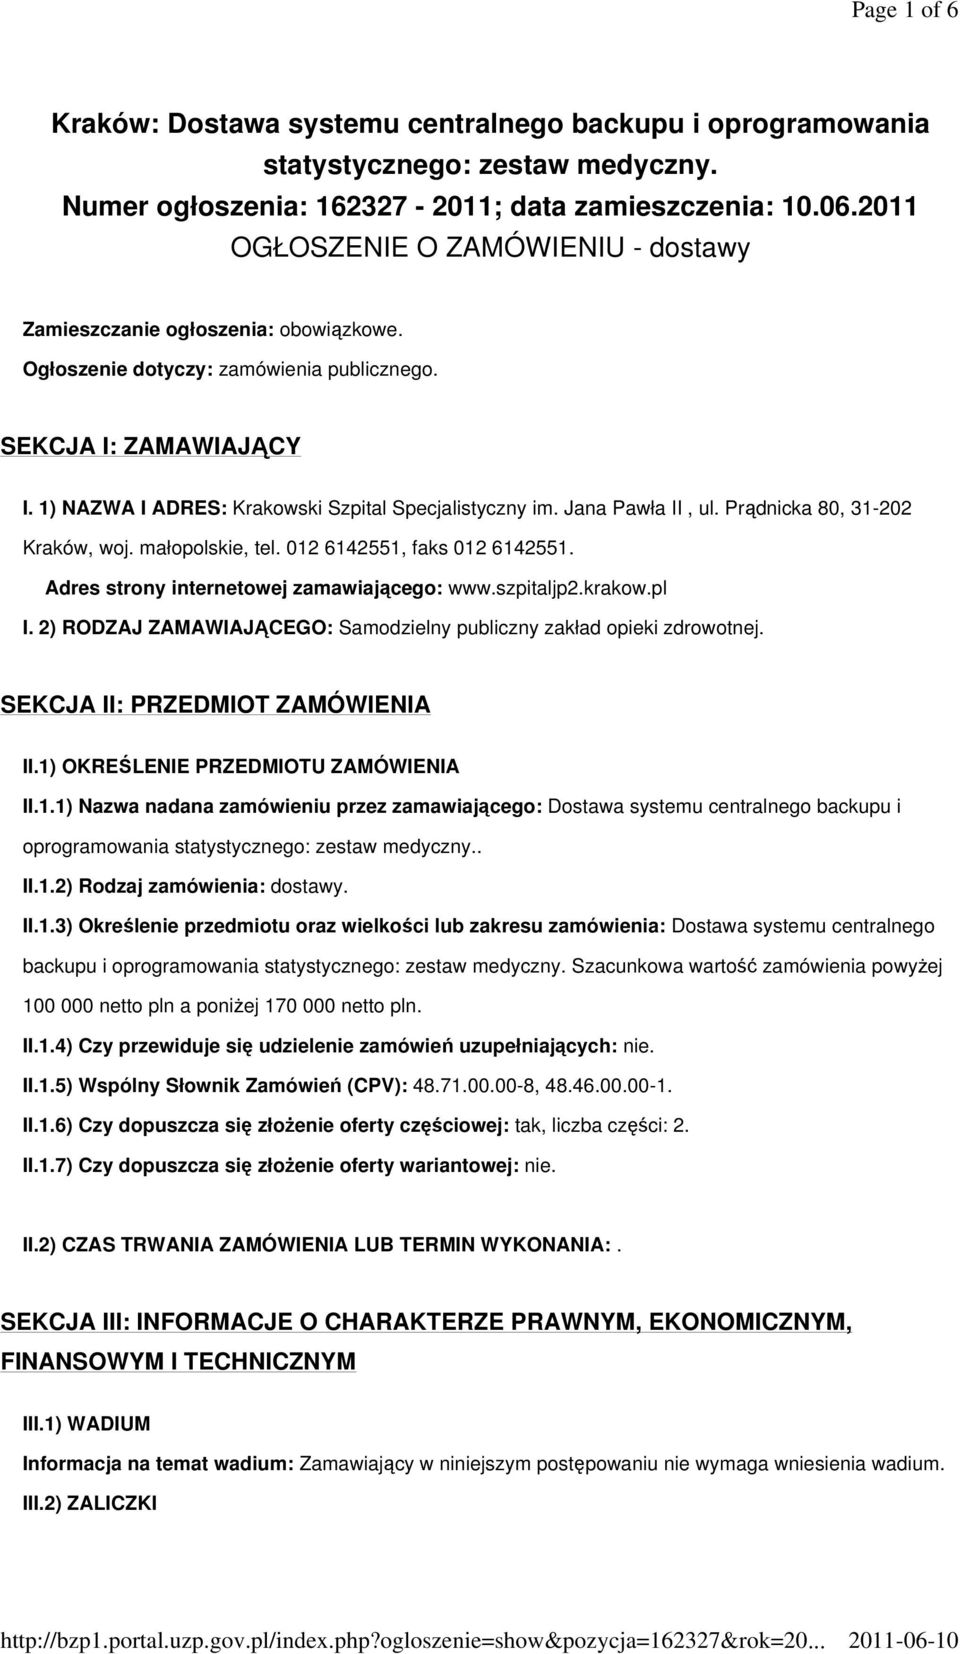 1) NAZWA I ADRES: Krakowski Szpital Specjalistyczny im. Jana Pawła II, ul. Prądnicka 80, 31-202 Kraków, woj. małopolskie, tel. 012 6142551, faks 012 6142551.